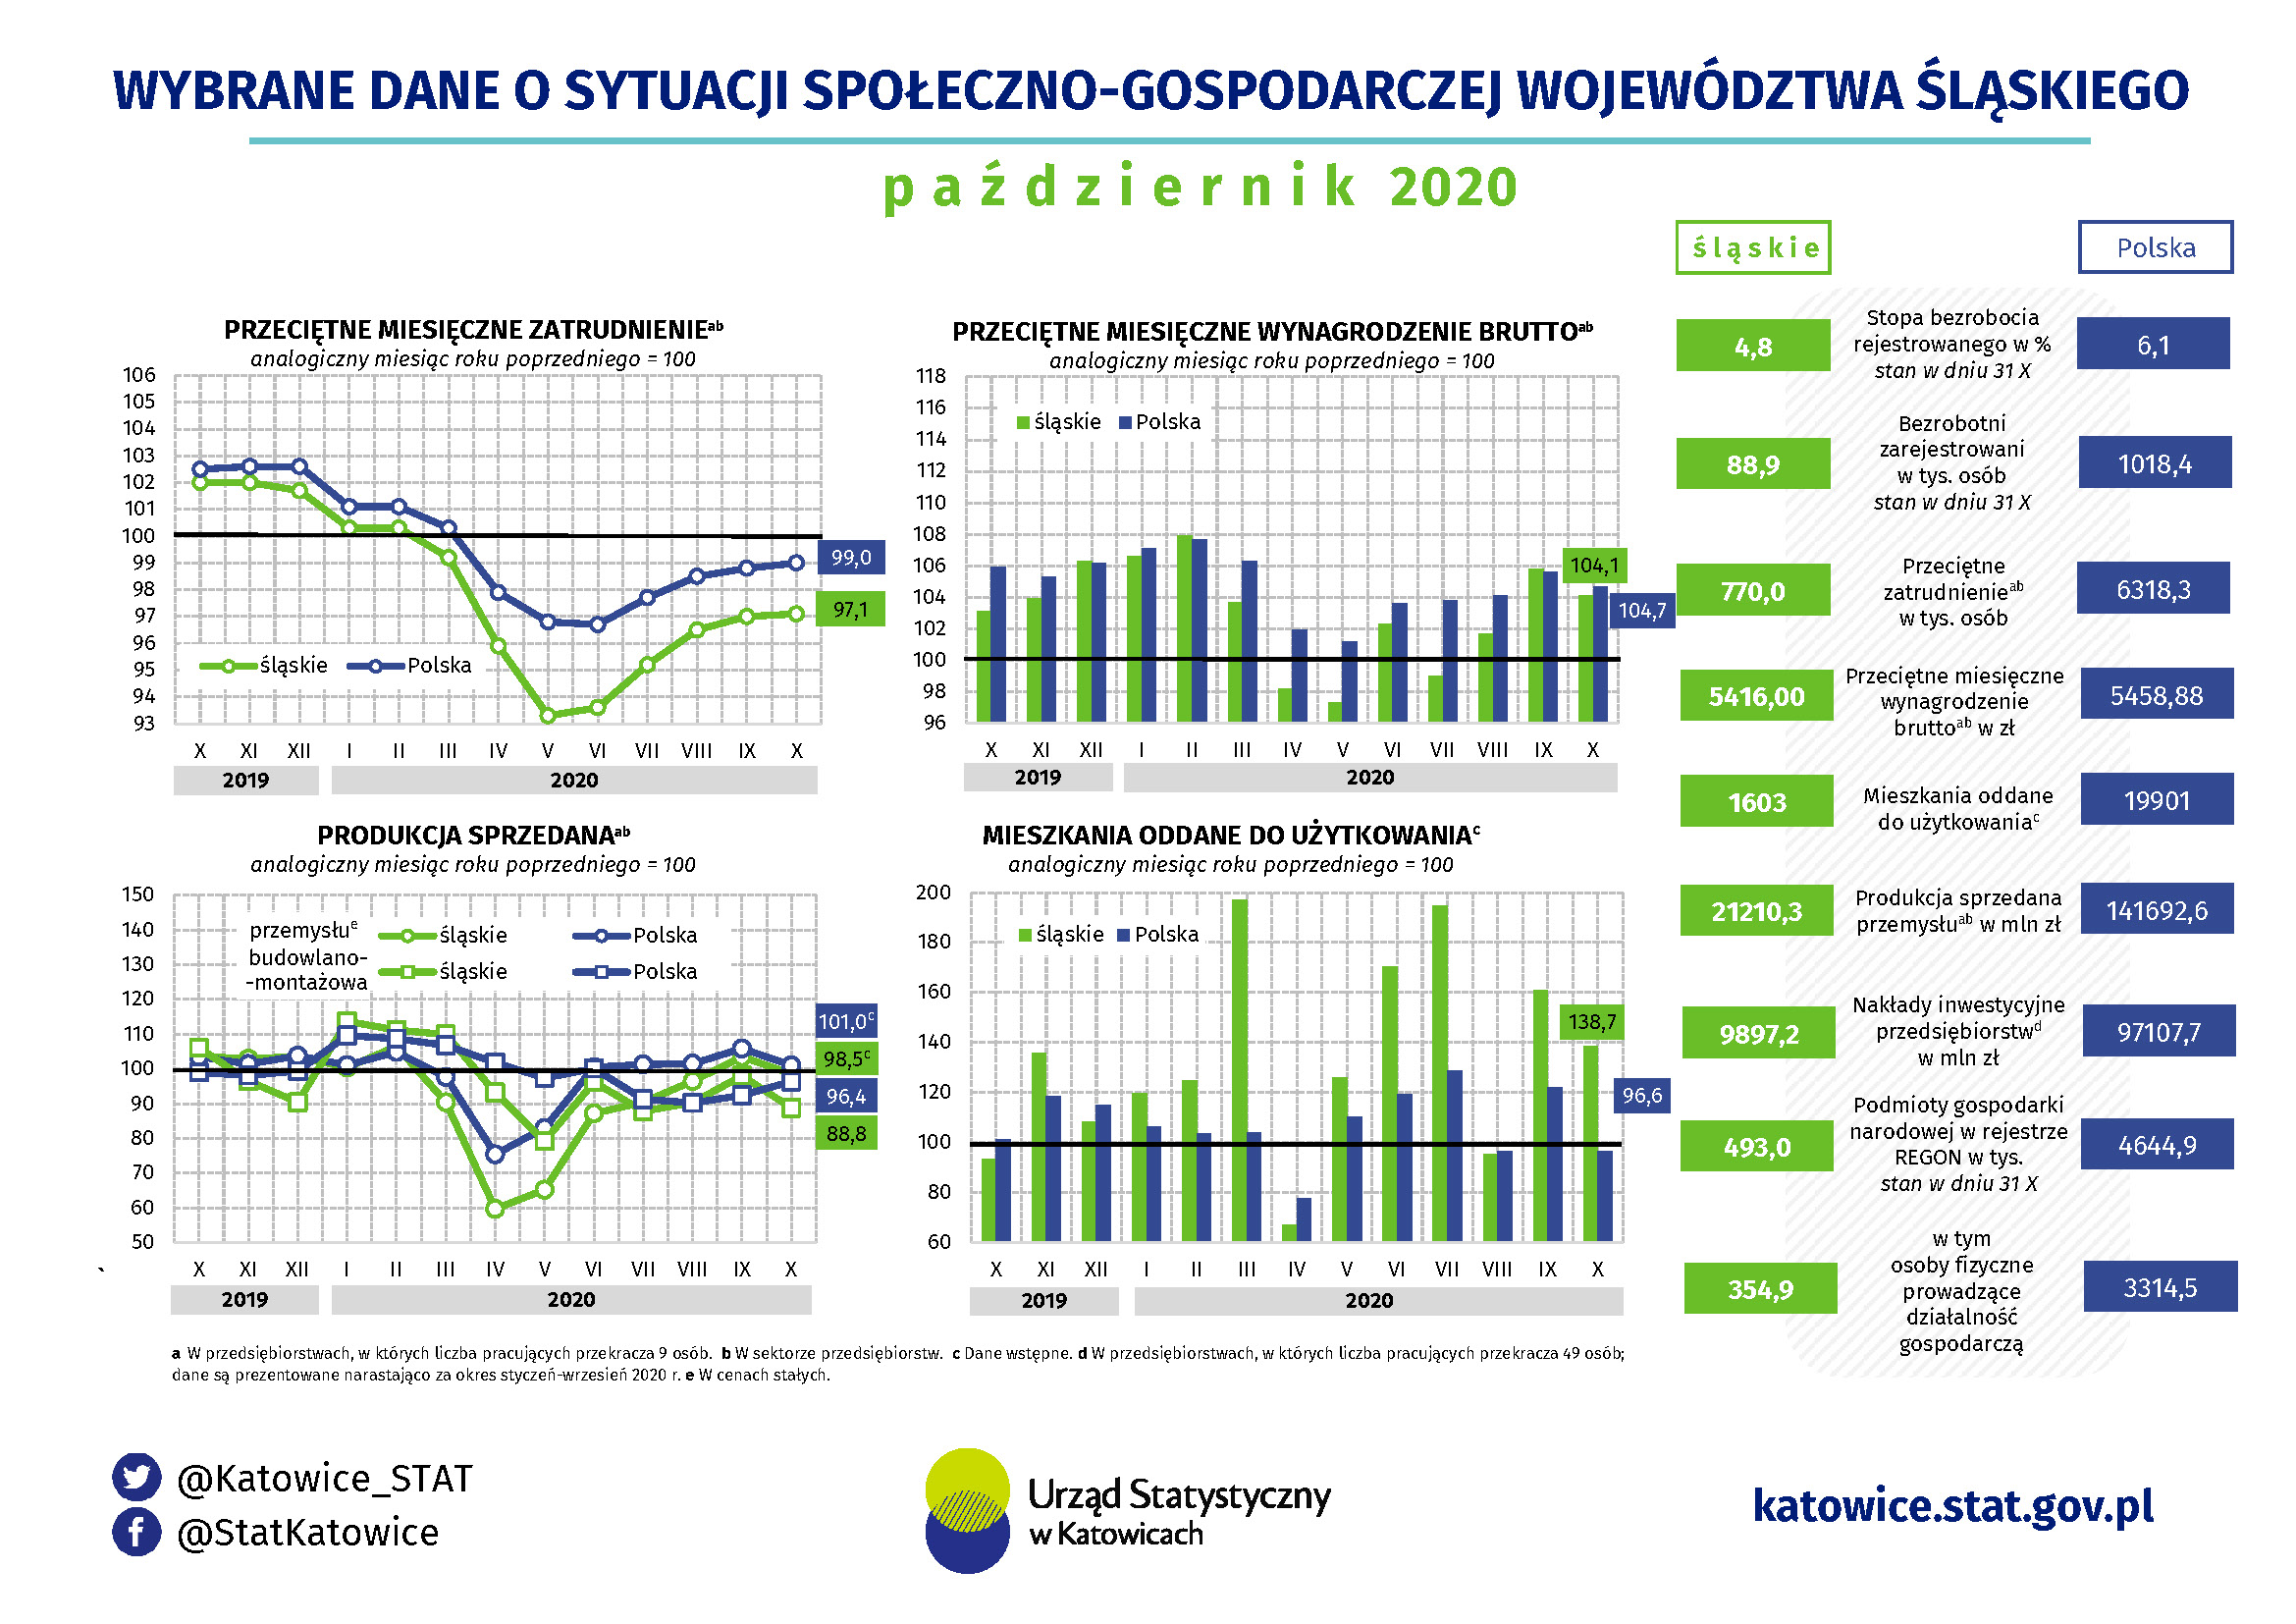 Infografika - Wybrane dane o sytuacji społeczno-gospodarczej województwa śląskiego w październiku 2020 r.